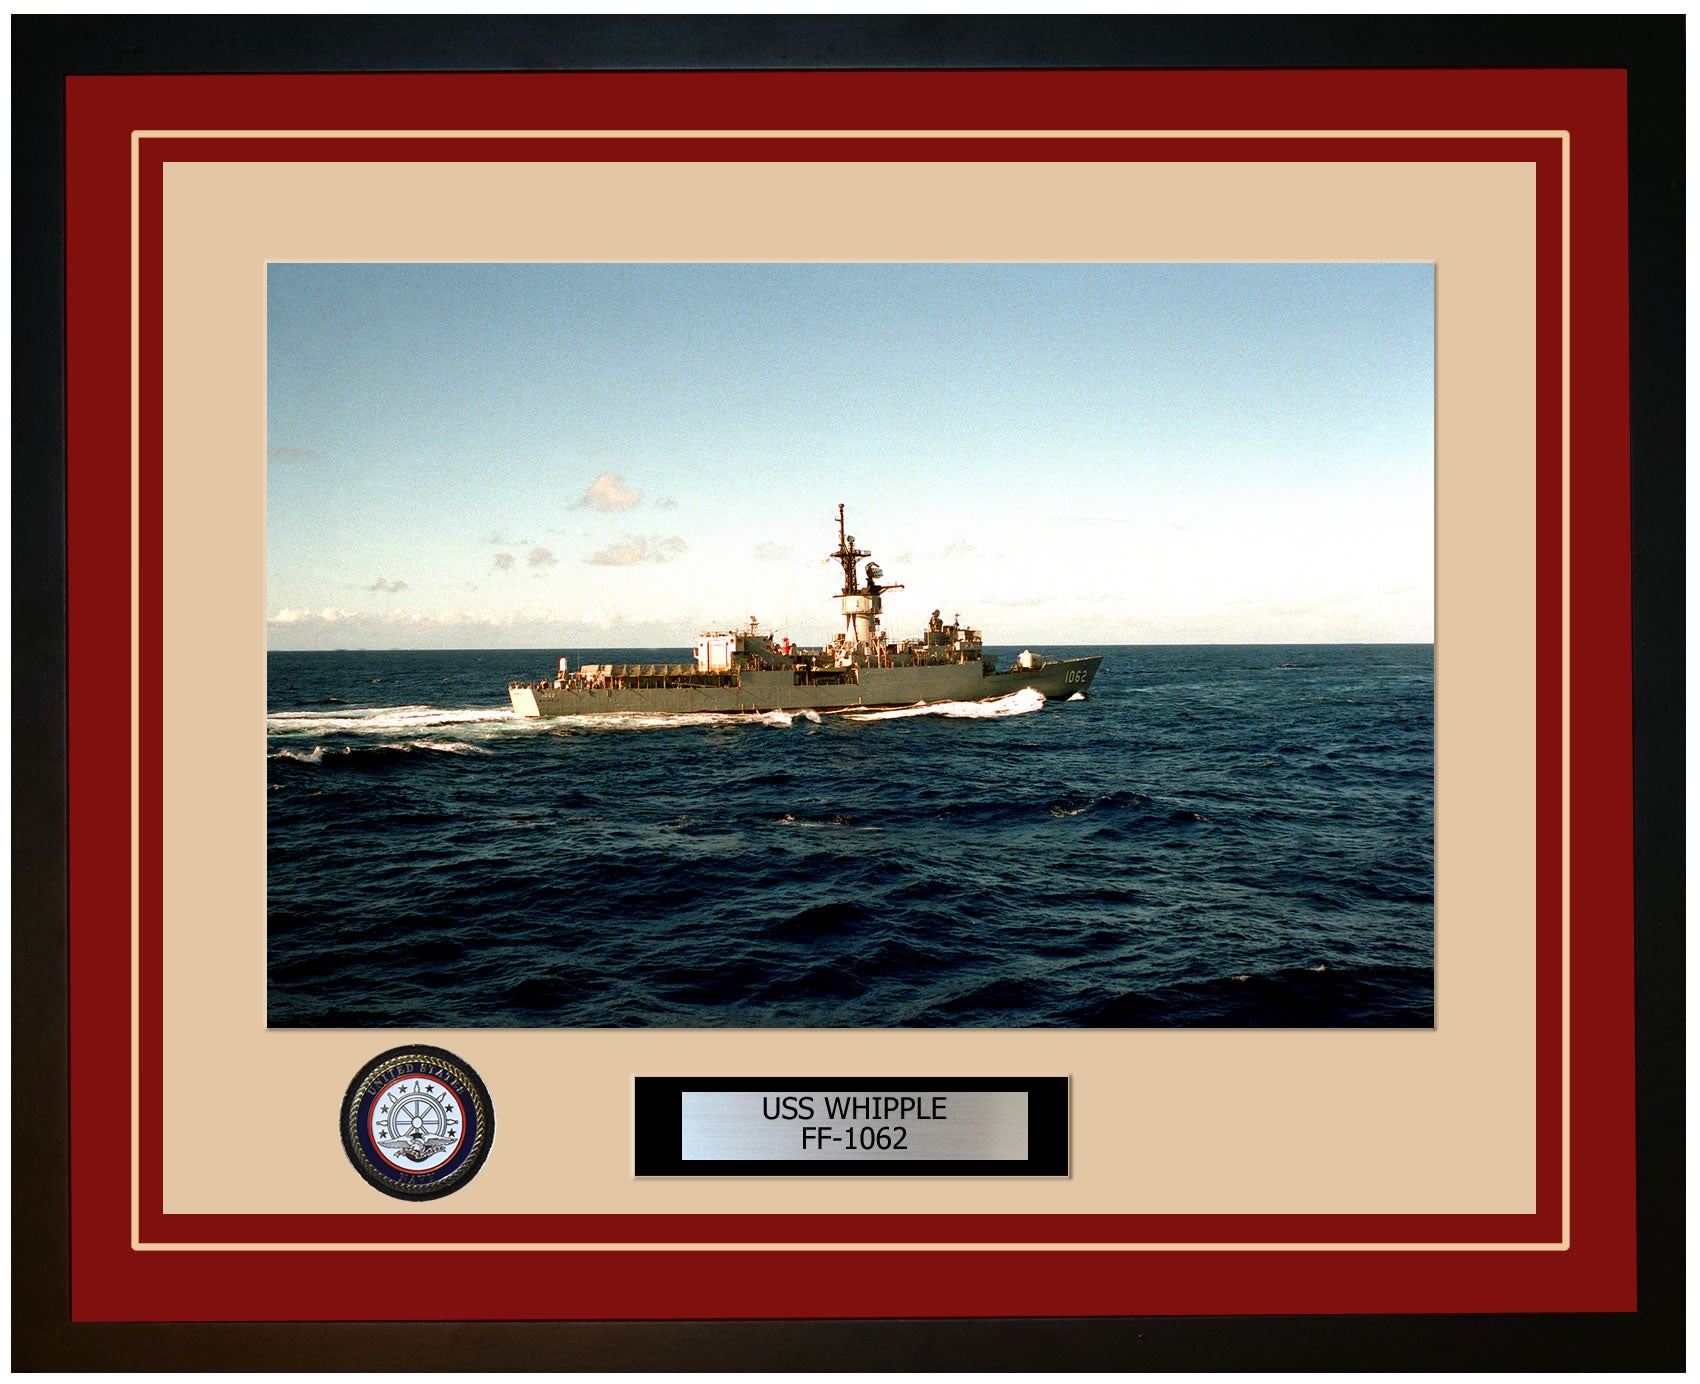 USS WHIPPLE FF-1062 Framed Navy Ship Photo Burgundy